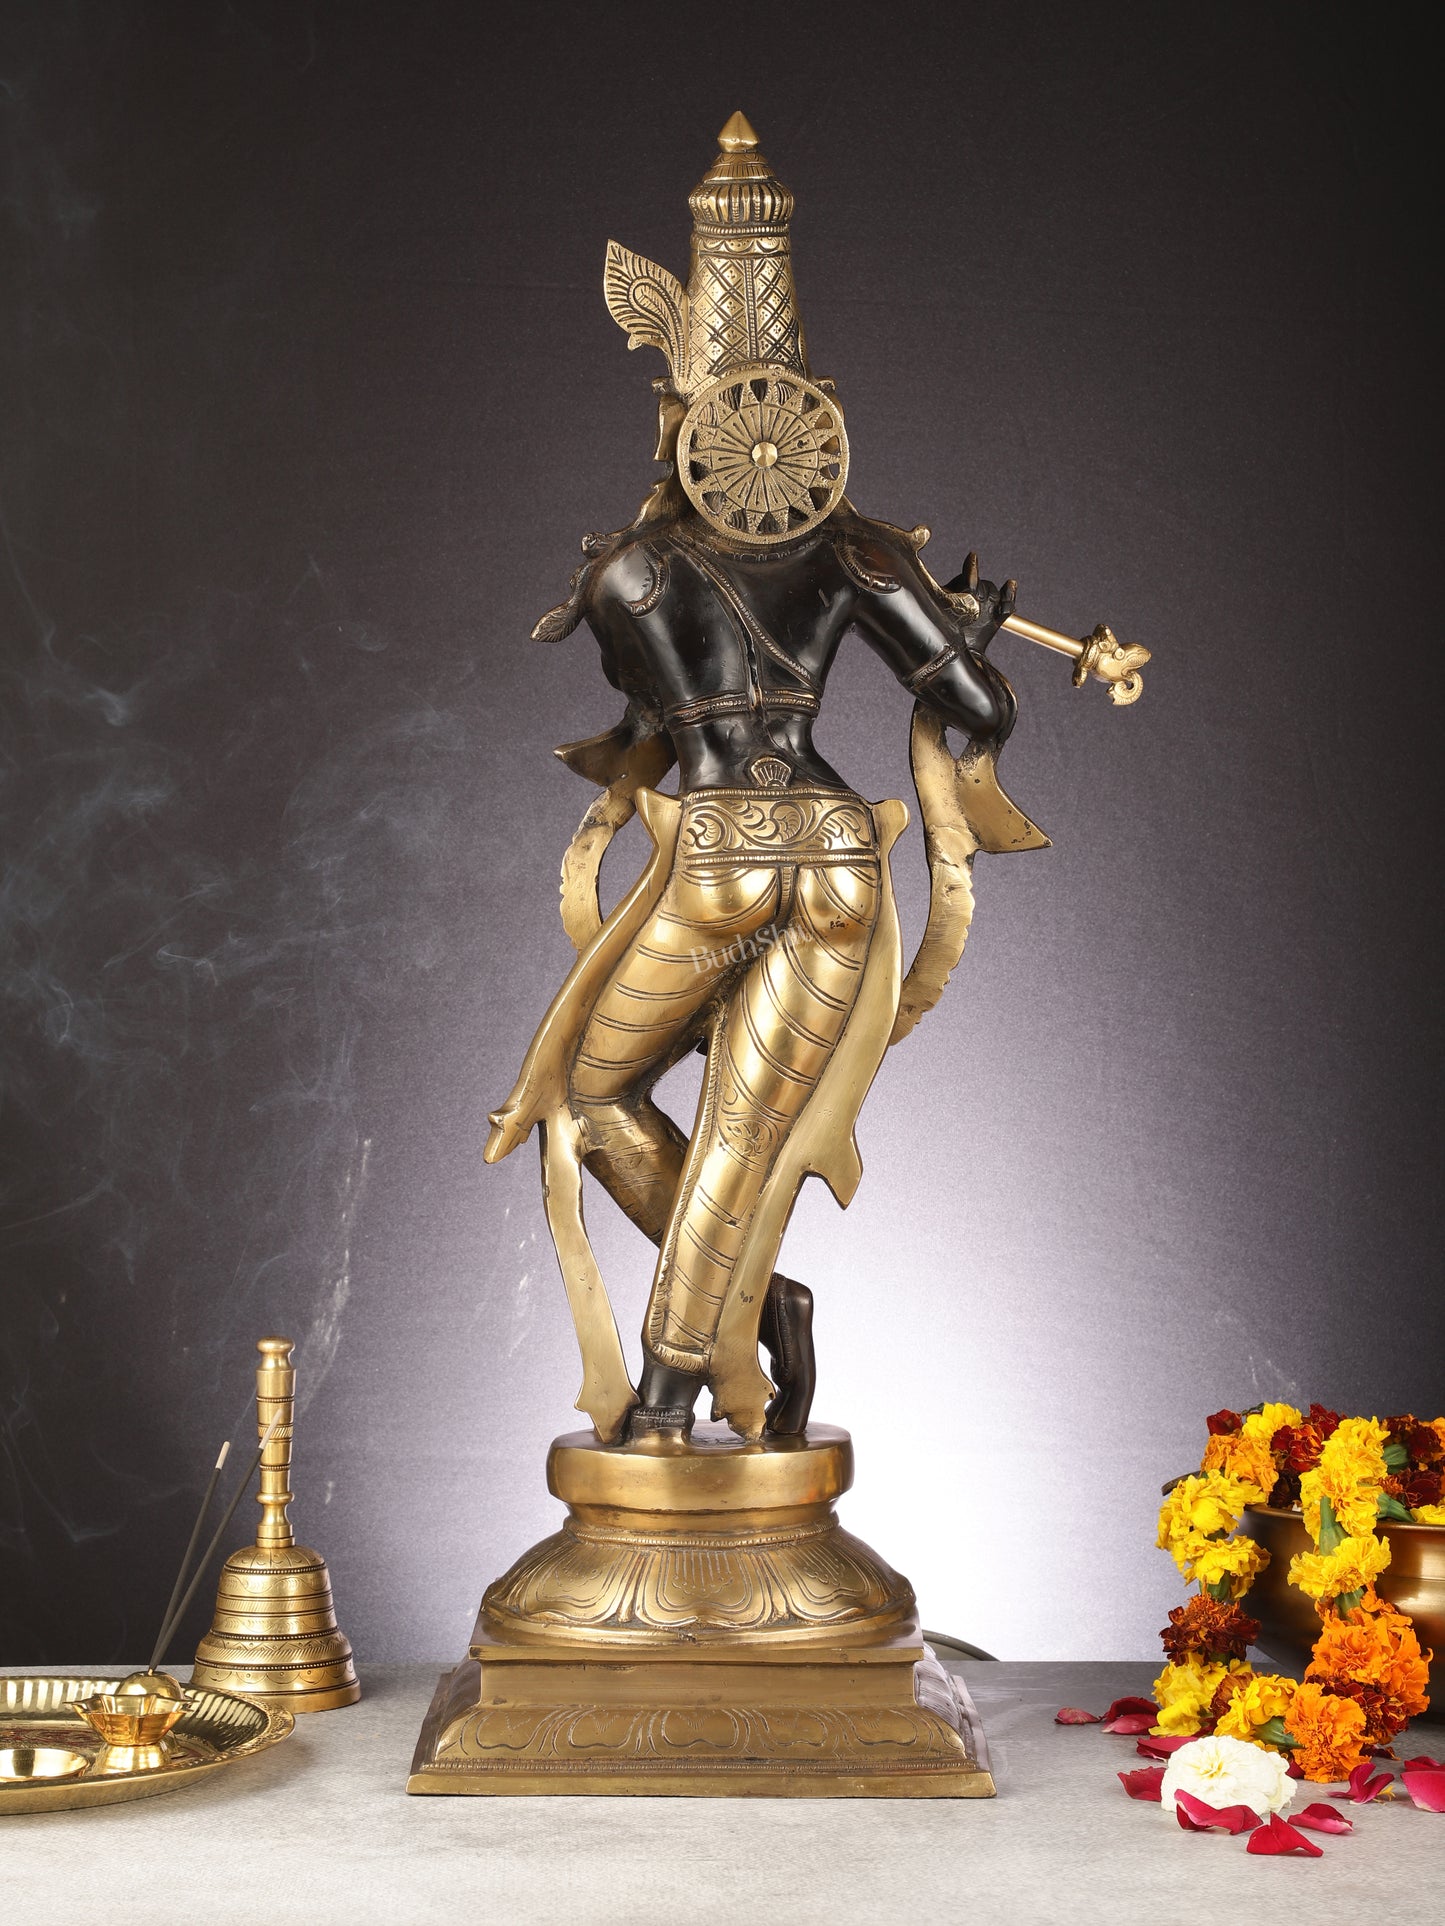 Brass Superfine Lord Krishna Statue - 28"